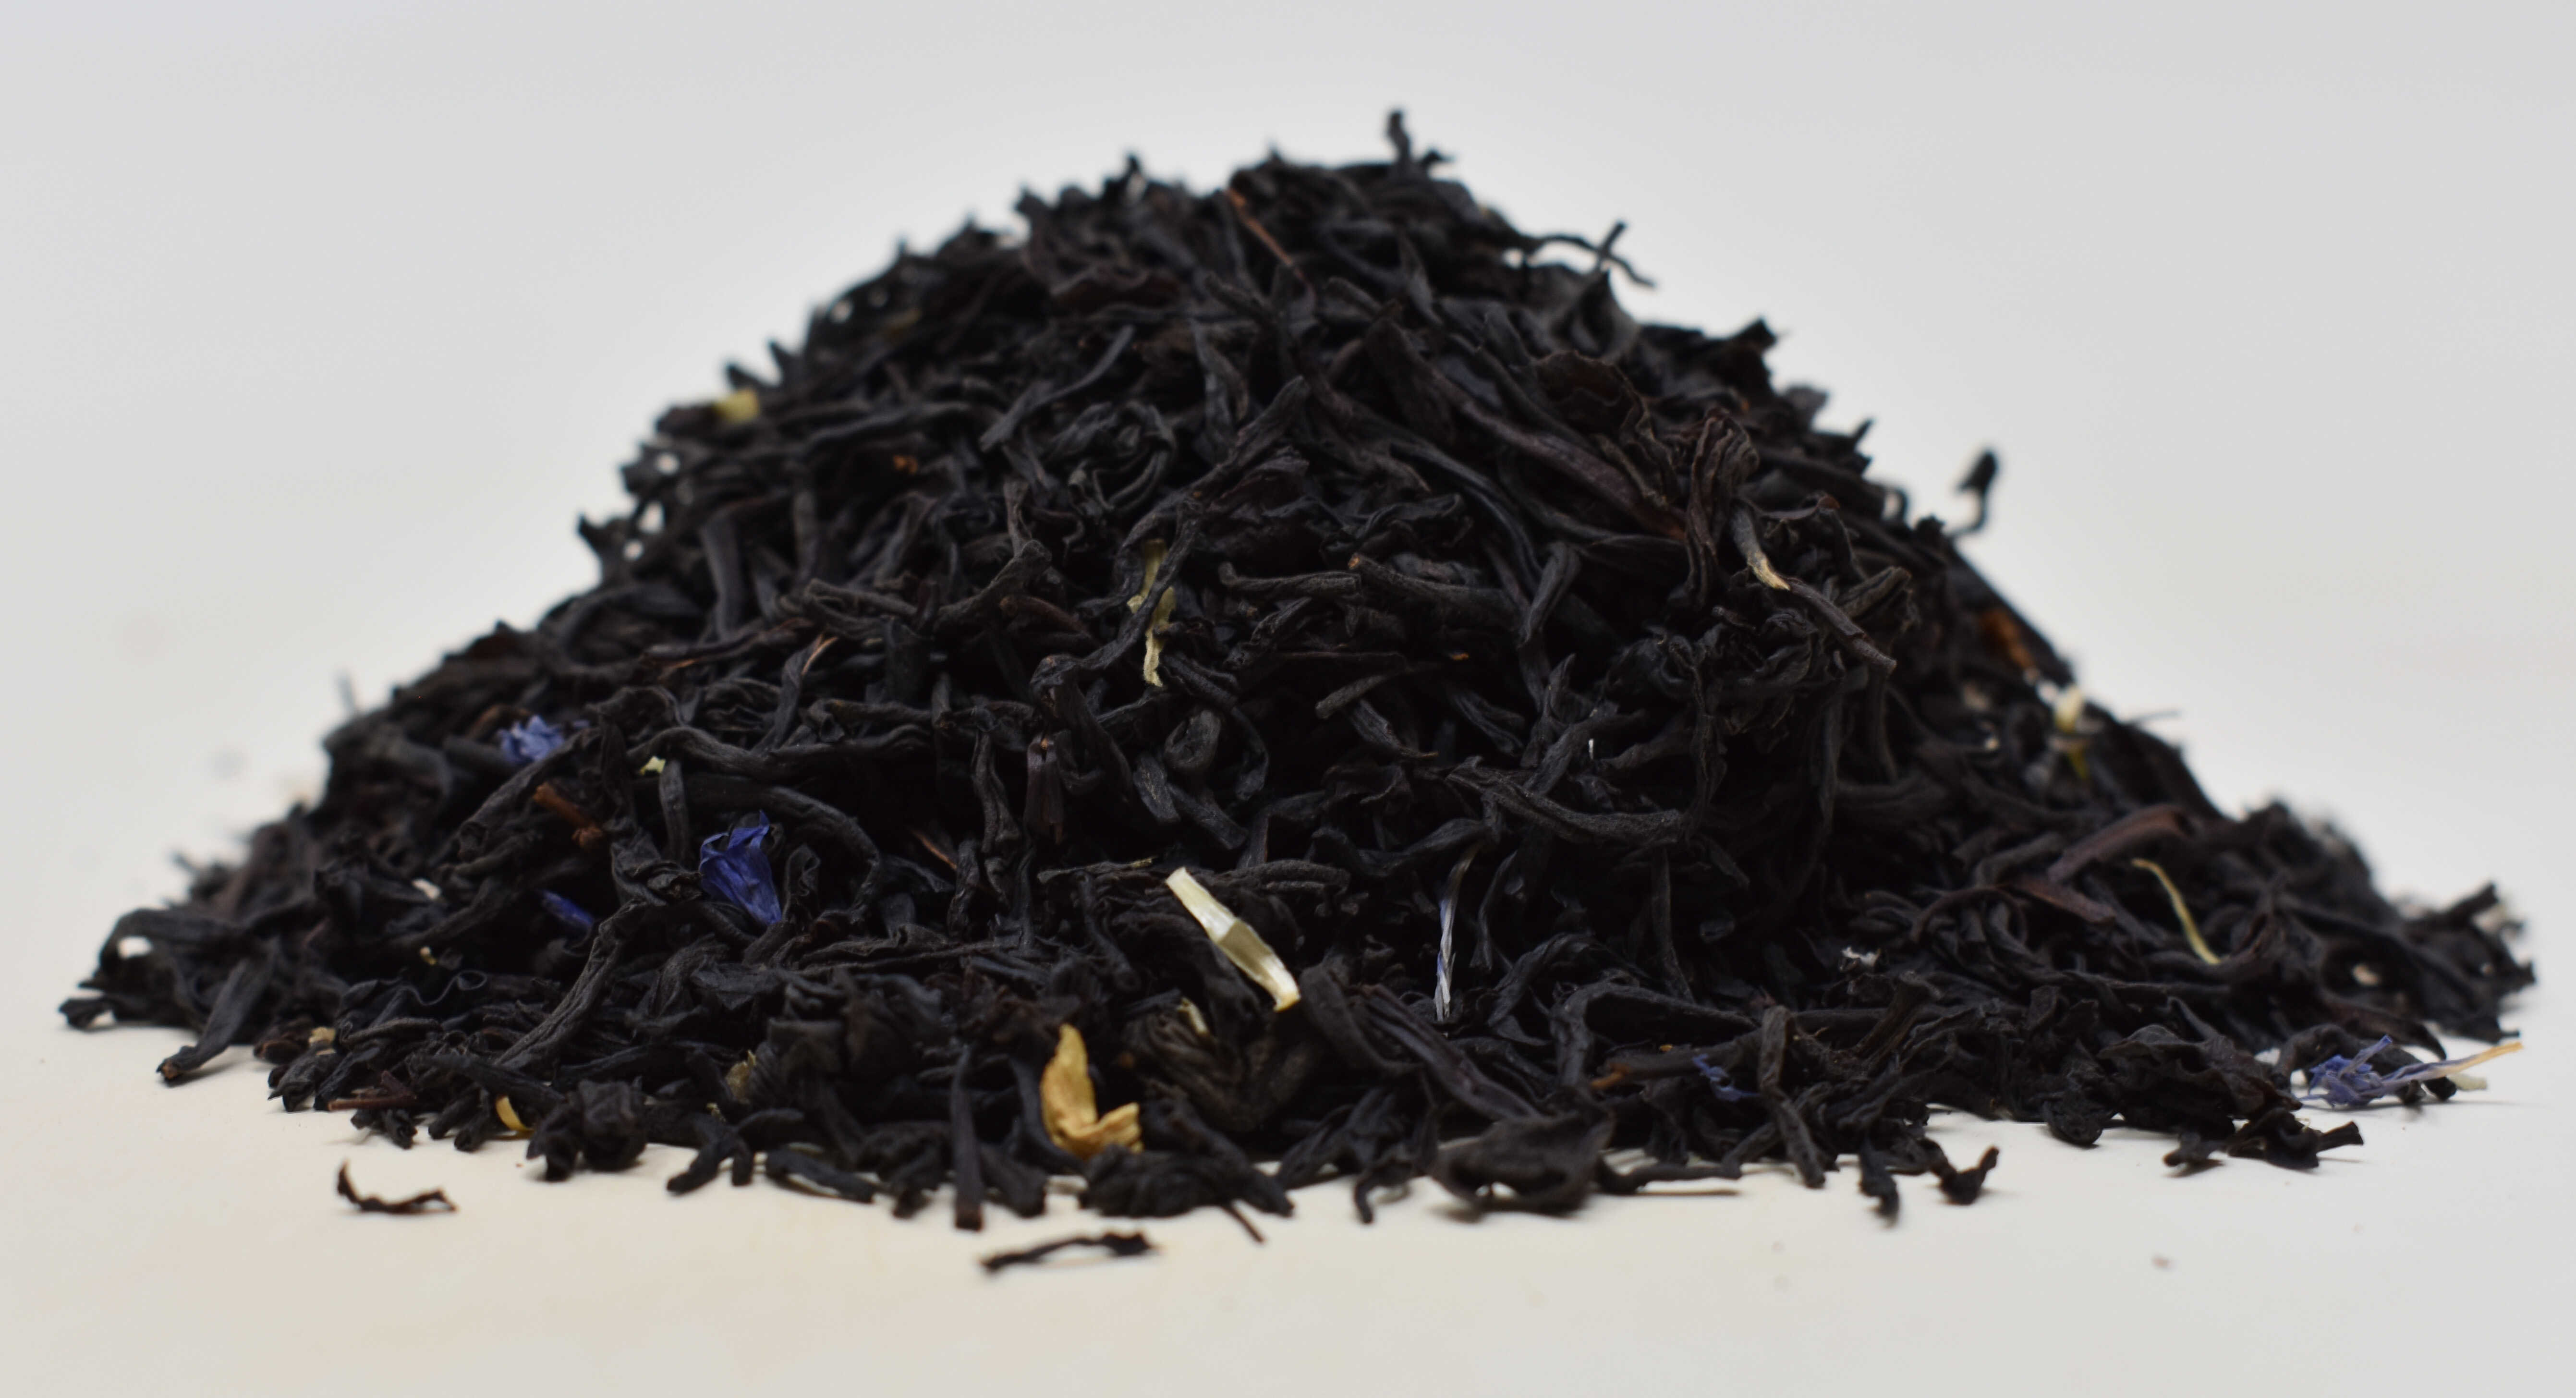 Black Currant Black Tea - Side Photo